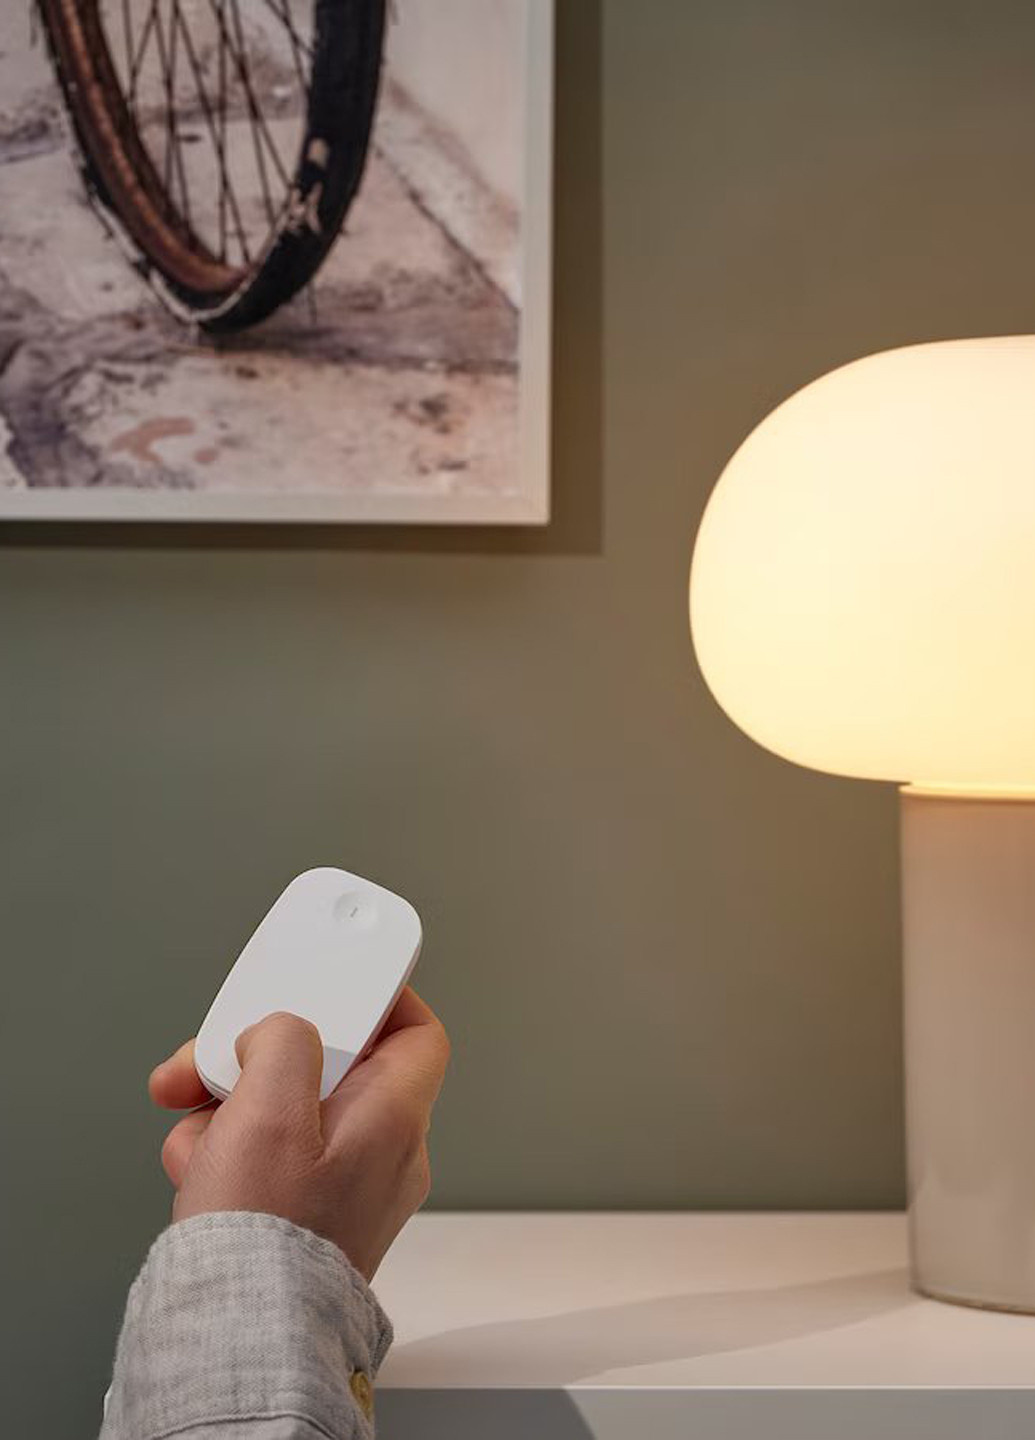 Лампа світлодіодна на керуванні, 9х8х13 см IKEA (265795934)